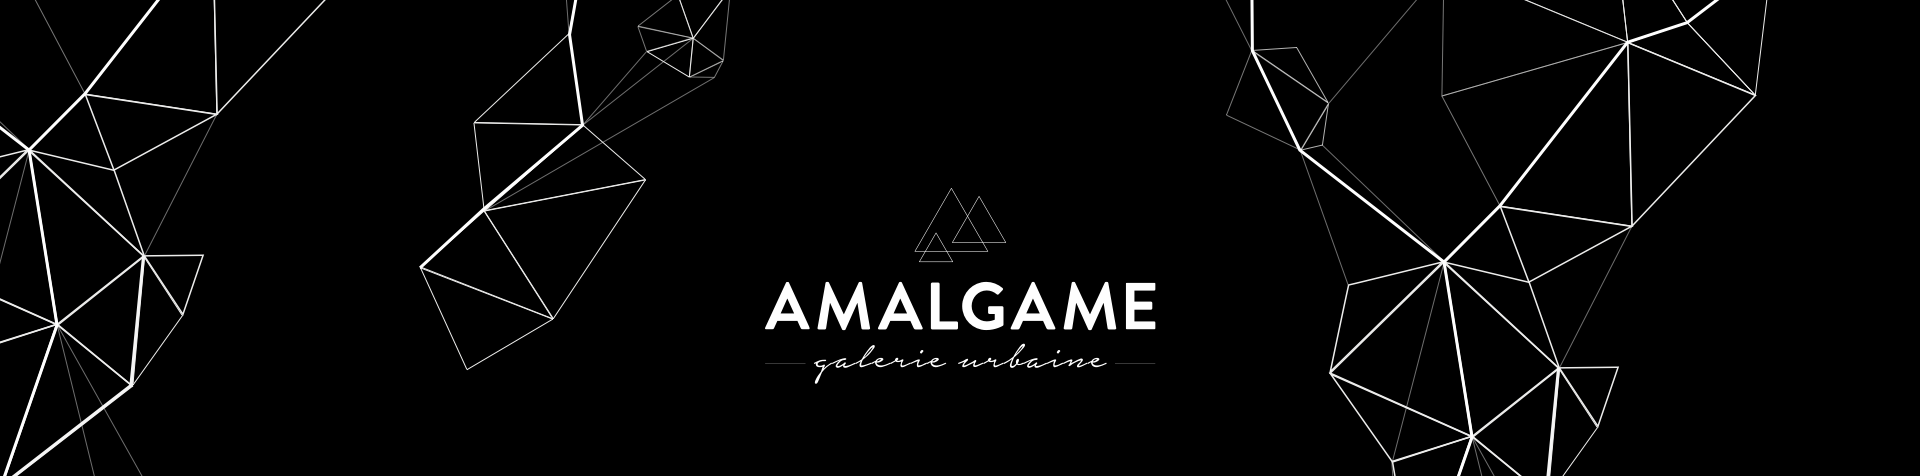 Amalgame - Galerie urbaine - DUO